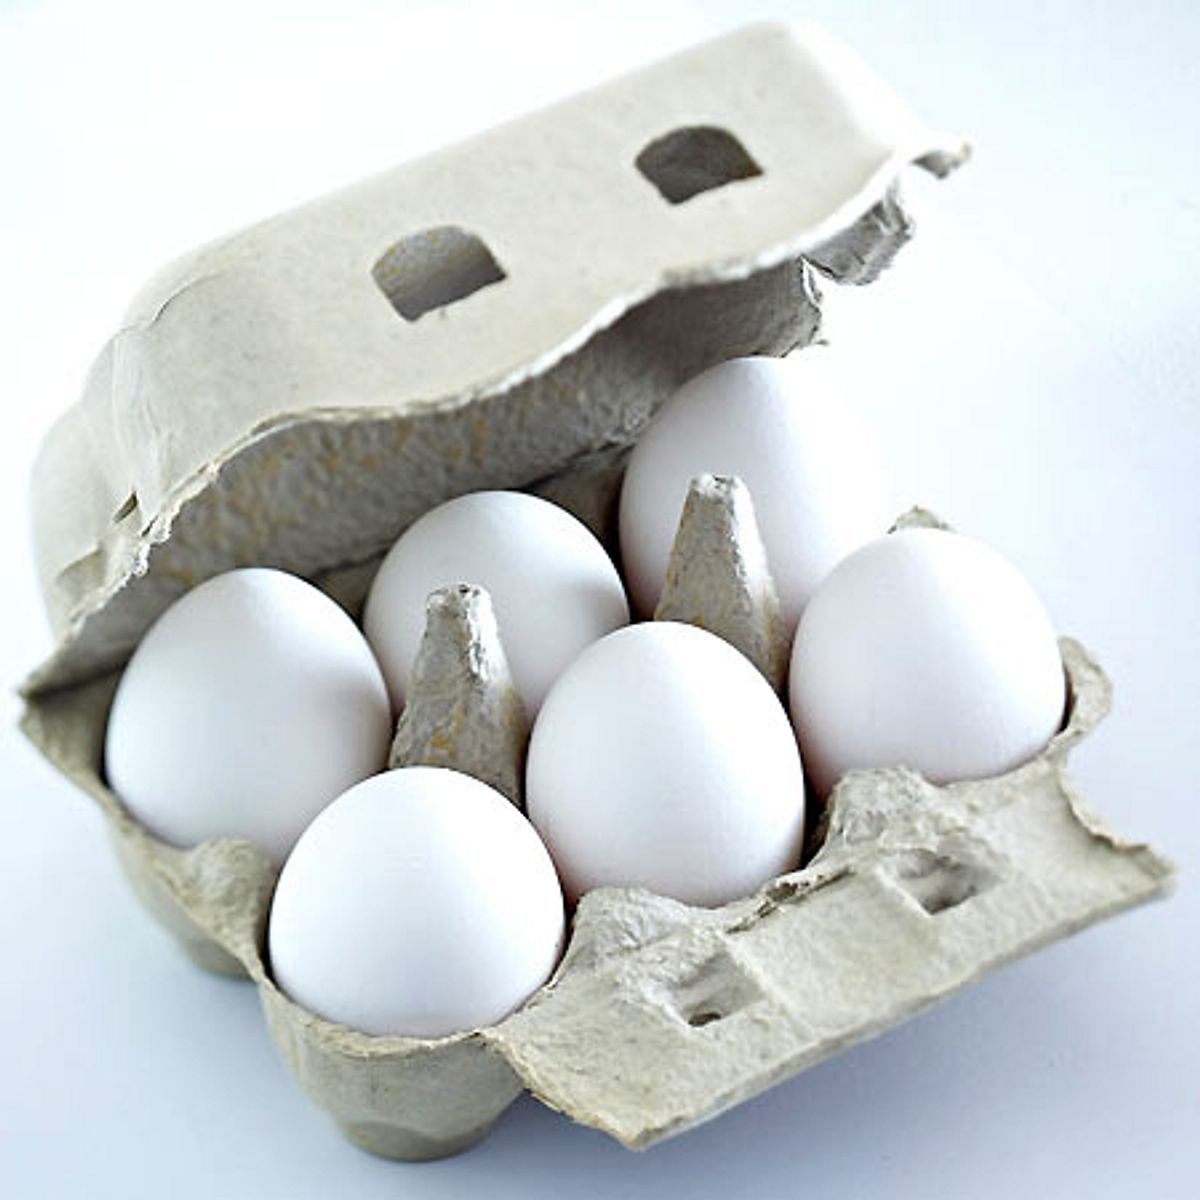 Eierschecke - Zutaten für ca. 24 Stücke: